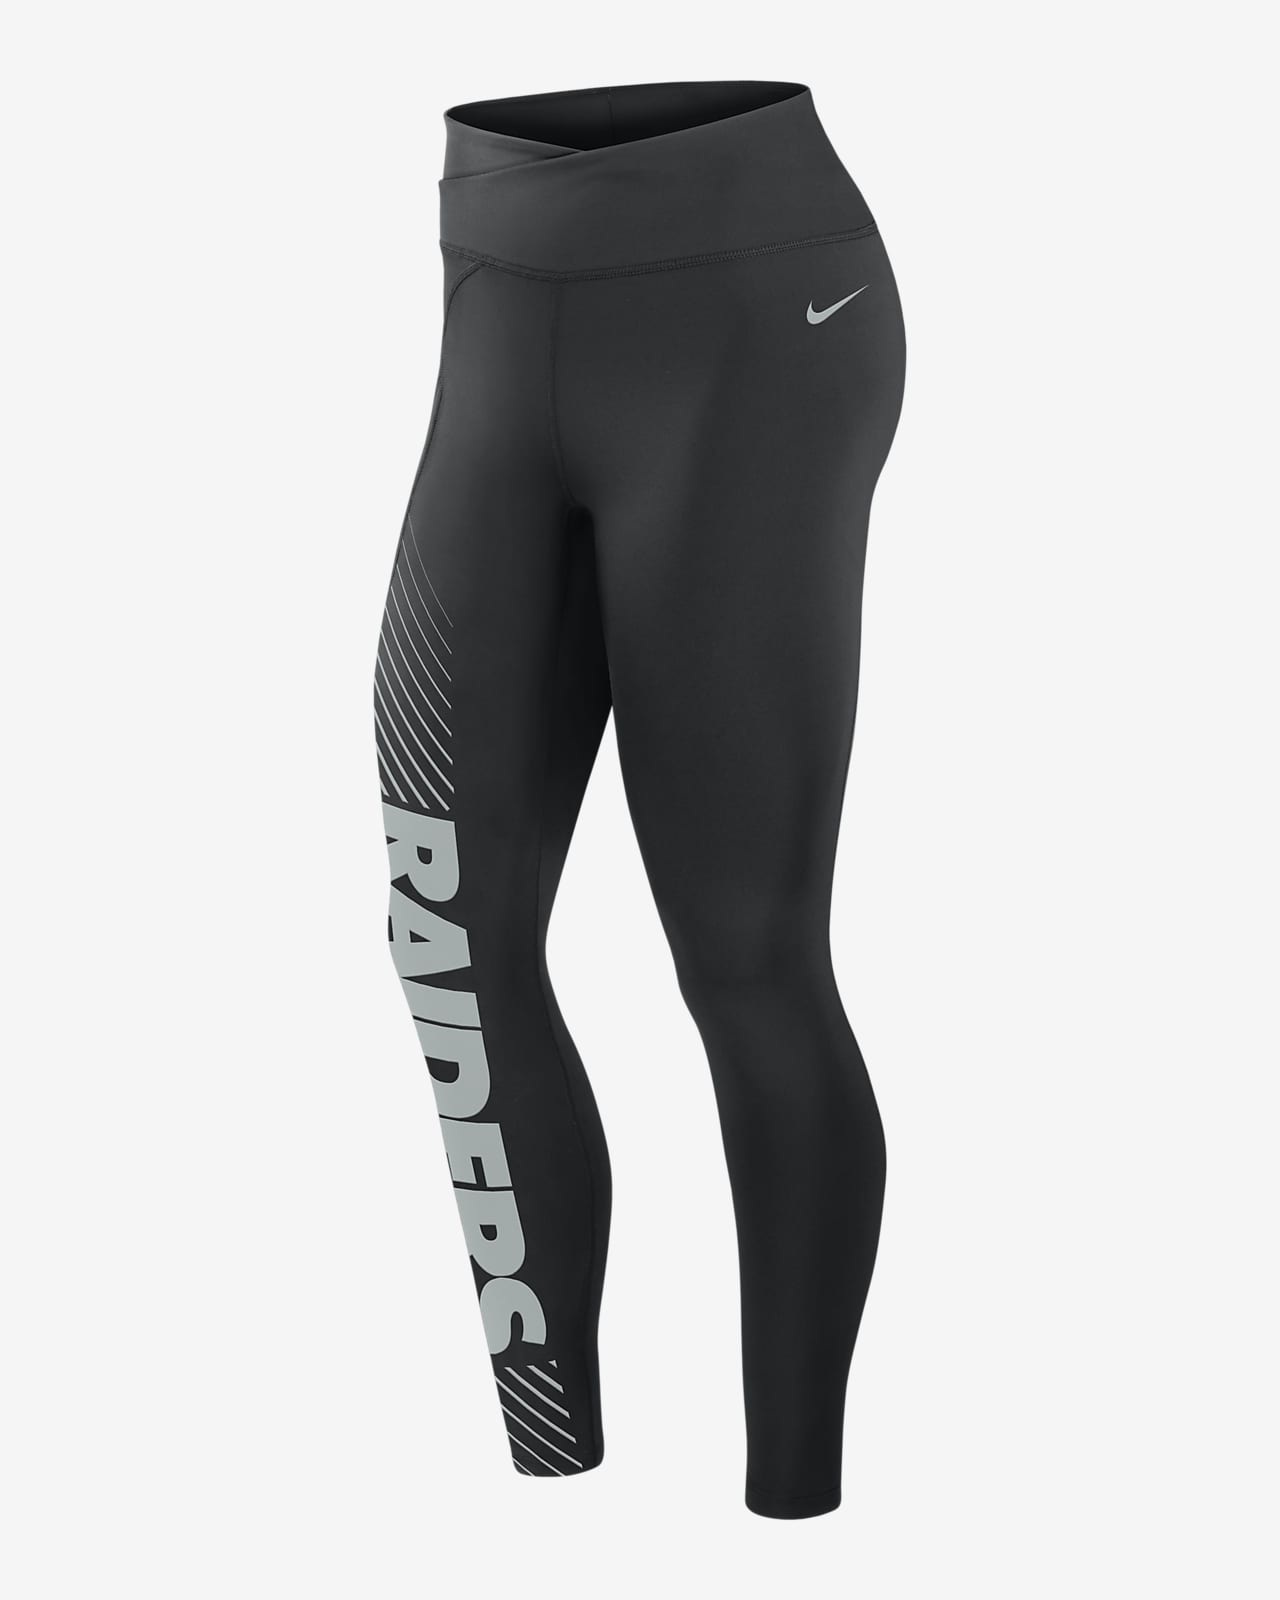 NEW Nike Dri-Fit Graphic Running Tights - Black - XXL